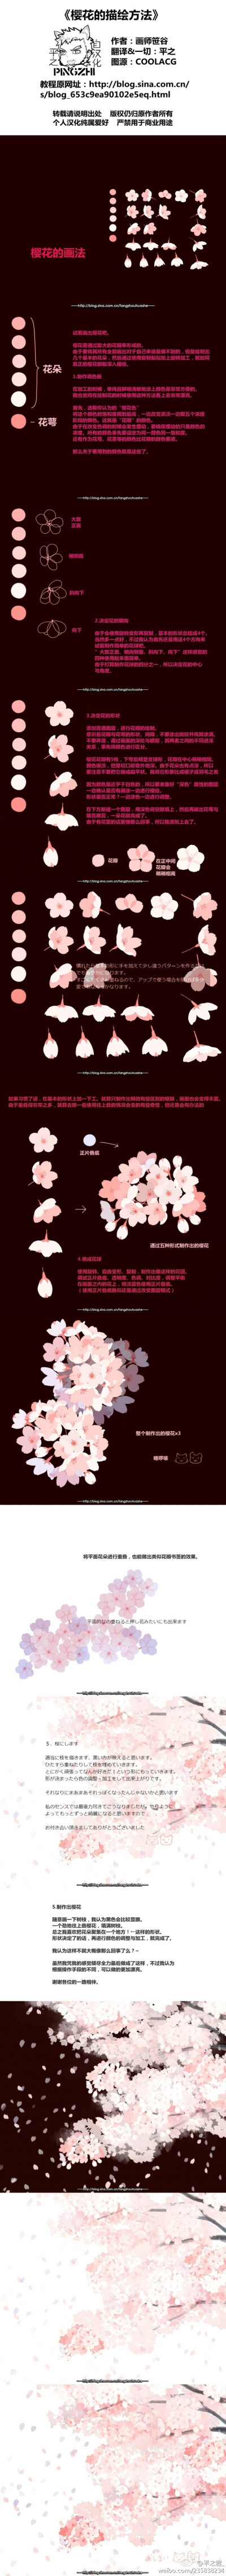 【绘画教程】《樱花的描绘方法》来自日本的画师笹谷的插画教程，真心美。看不清请戳大图。图源：COOLACG 日本——画师笹谷的插画花卉绘画教程